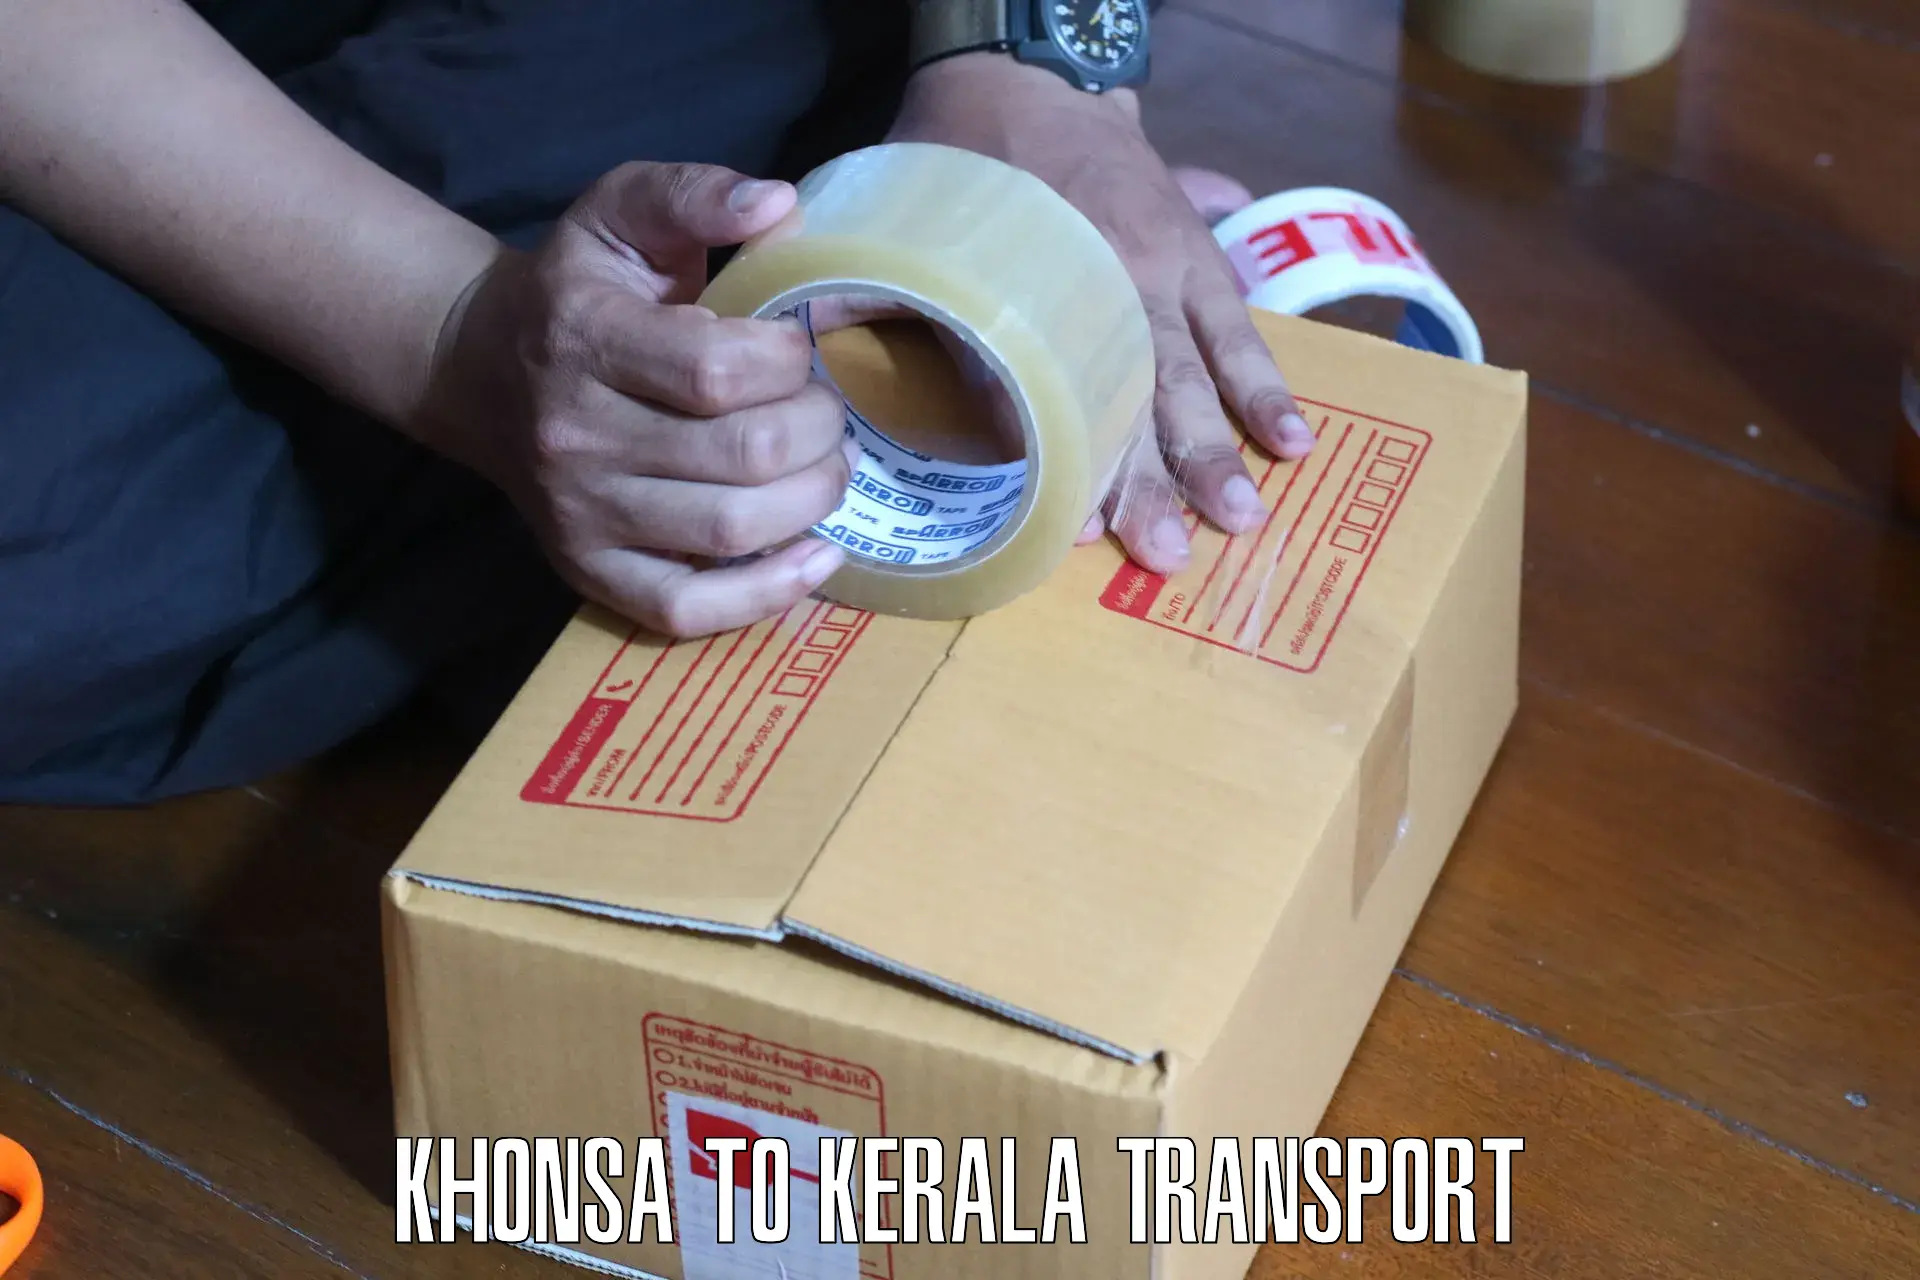 Nearest transport service Khonsa to Kasaragod